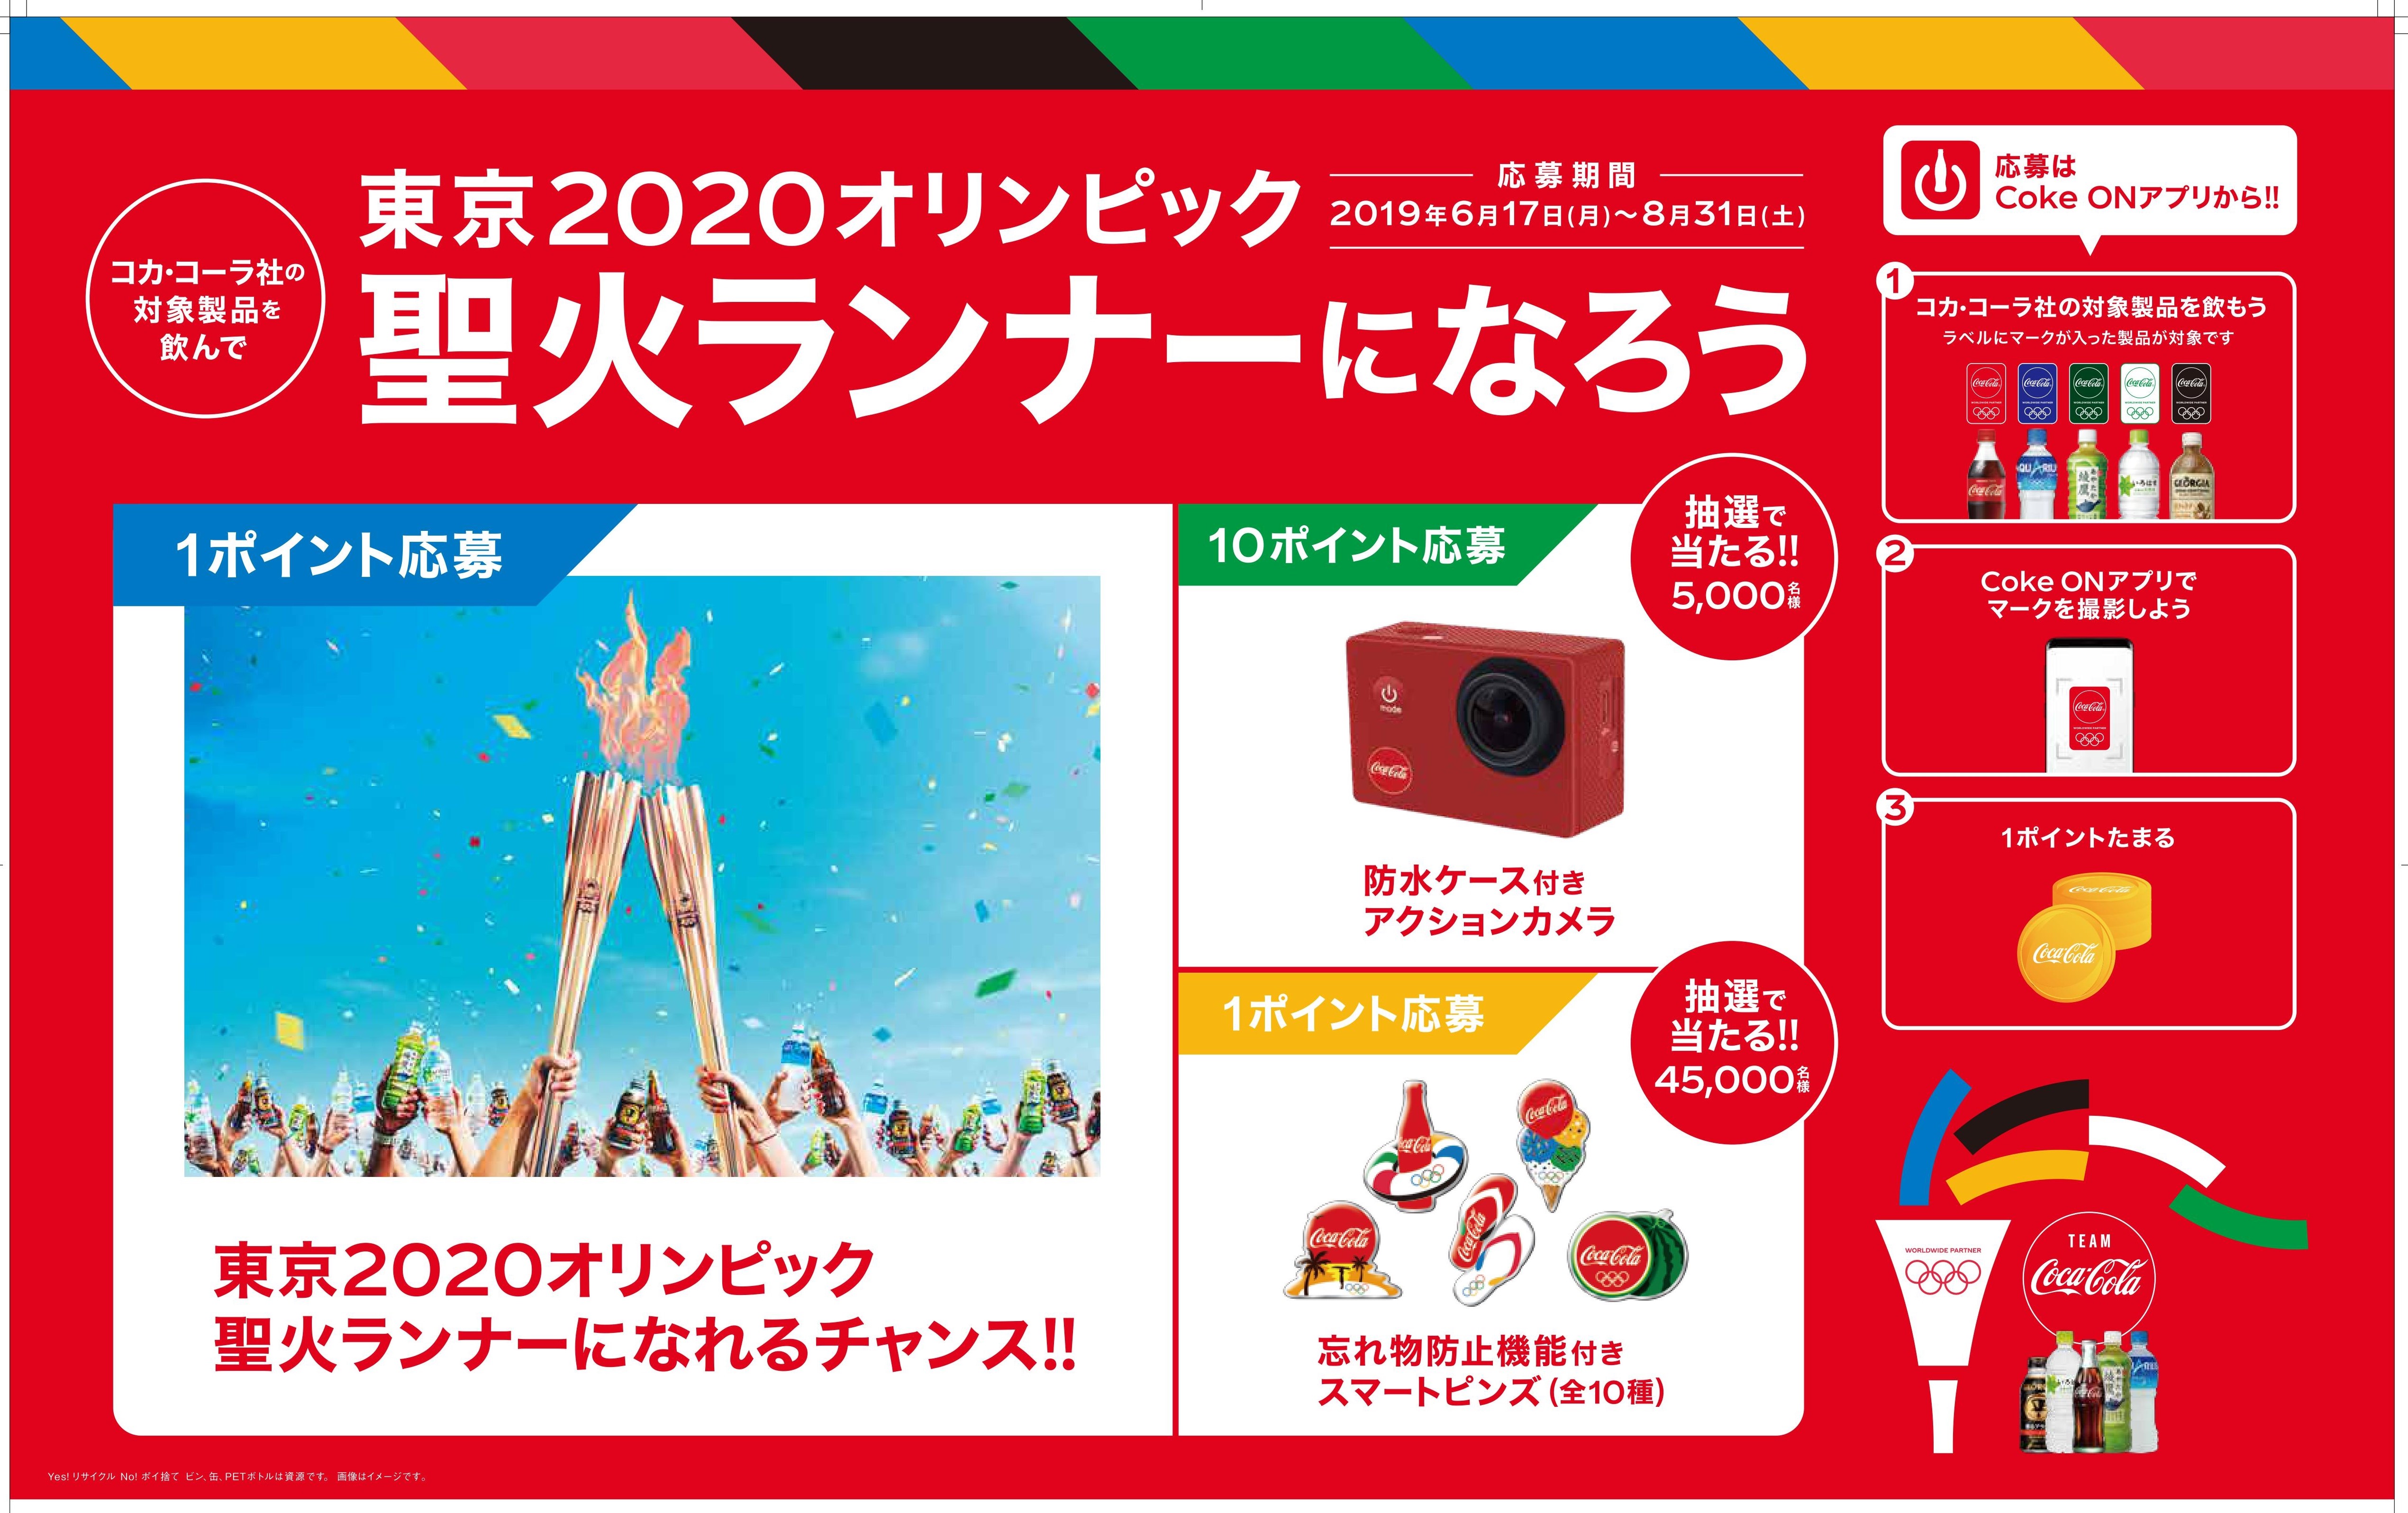 東京2020オリンピック開幕まで約一年コカ・コーラ社製品を飲んで、東京2020オリンピックの聖火ランナーになろう！ コカ・コーラ社 東京2020オリンピック 応援キャンペーン｜日本コカ・コーラ